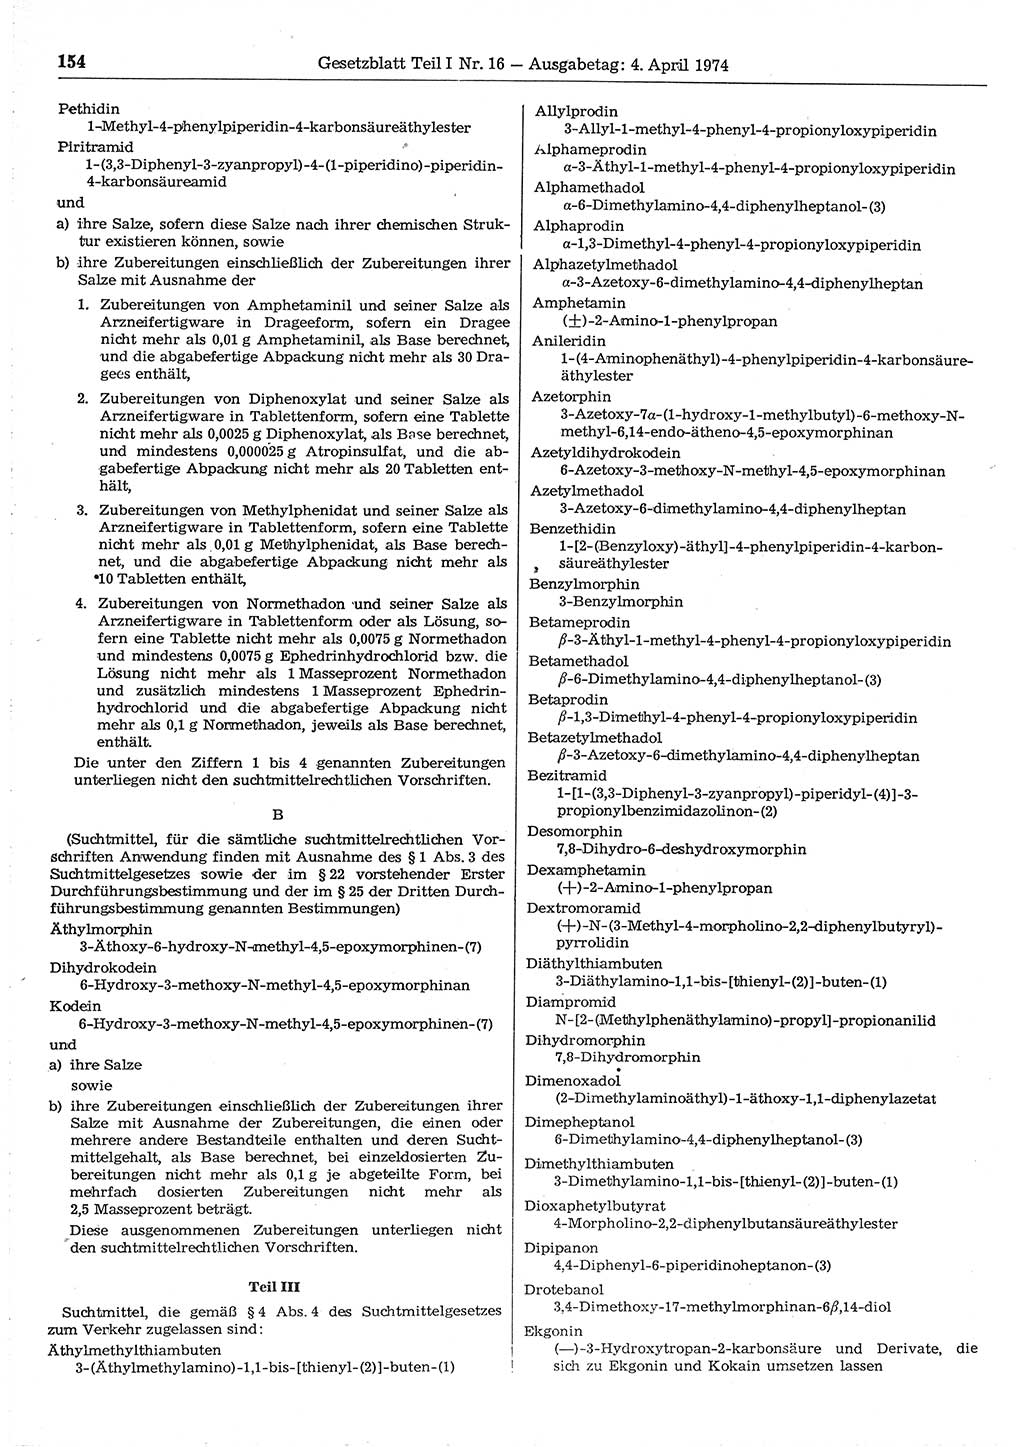 Gesetzblatt (GBl.) der Deutschen Demokratischen Republik (DDR) Teil Ⅰ 1974, Seite 154 (GBl. DDR Ⅰ 1974, S. 154)